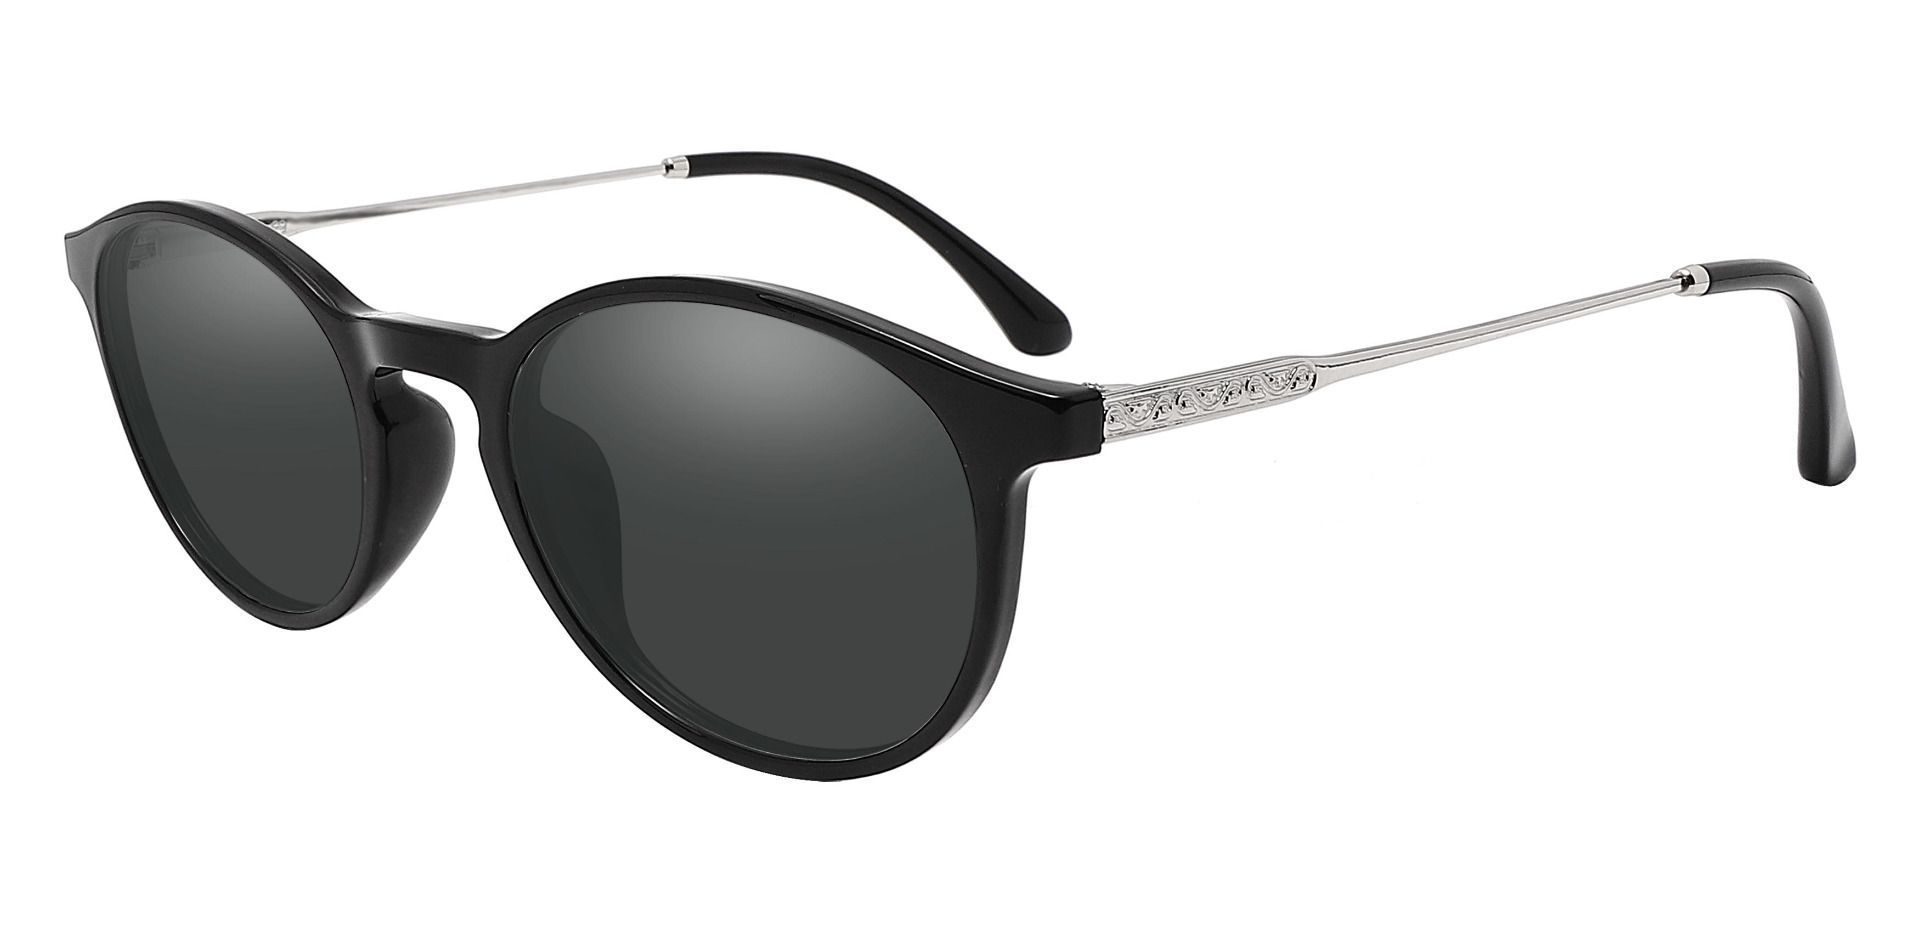 Felton Oval Progressive Sunglasses - Black Frame With Gray Lenses